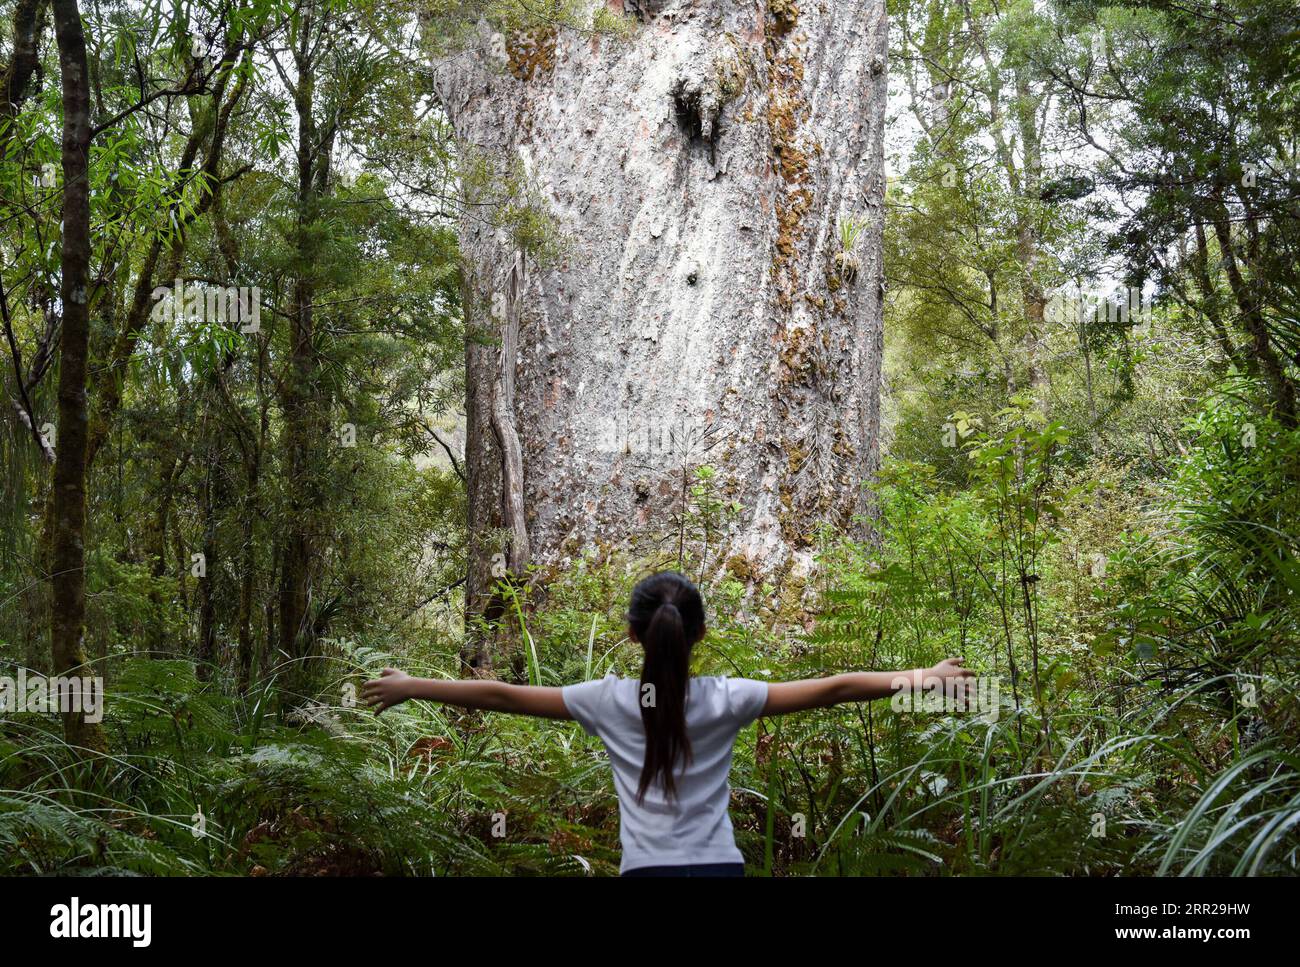 201007 -- PECHINO, 7 ottobre 2020 -- Una vista turistica di un albero di kauri nella foresta di Waipoua nel Northland, nuova Zelanda, 6 ottobre 2020. Waipoua, e le foreste adiacenti, costituiscono il più grande tratto rimanente di foresta nativa nel Northland, nonché la sede degli alberi di kauri. XINHUA FOTO DEL GIORNO GuoxLei PUBLICATIONxNOTxINxCHN Foto Stock